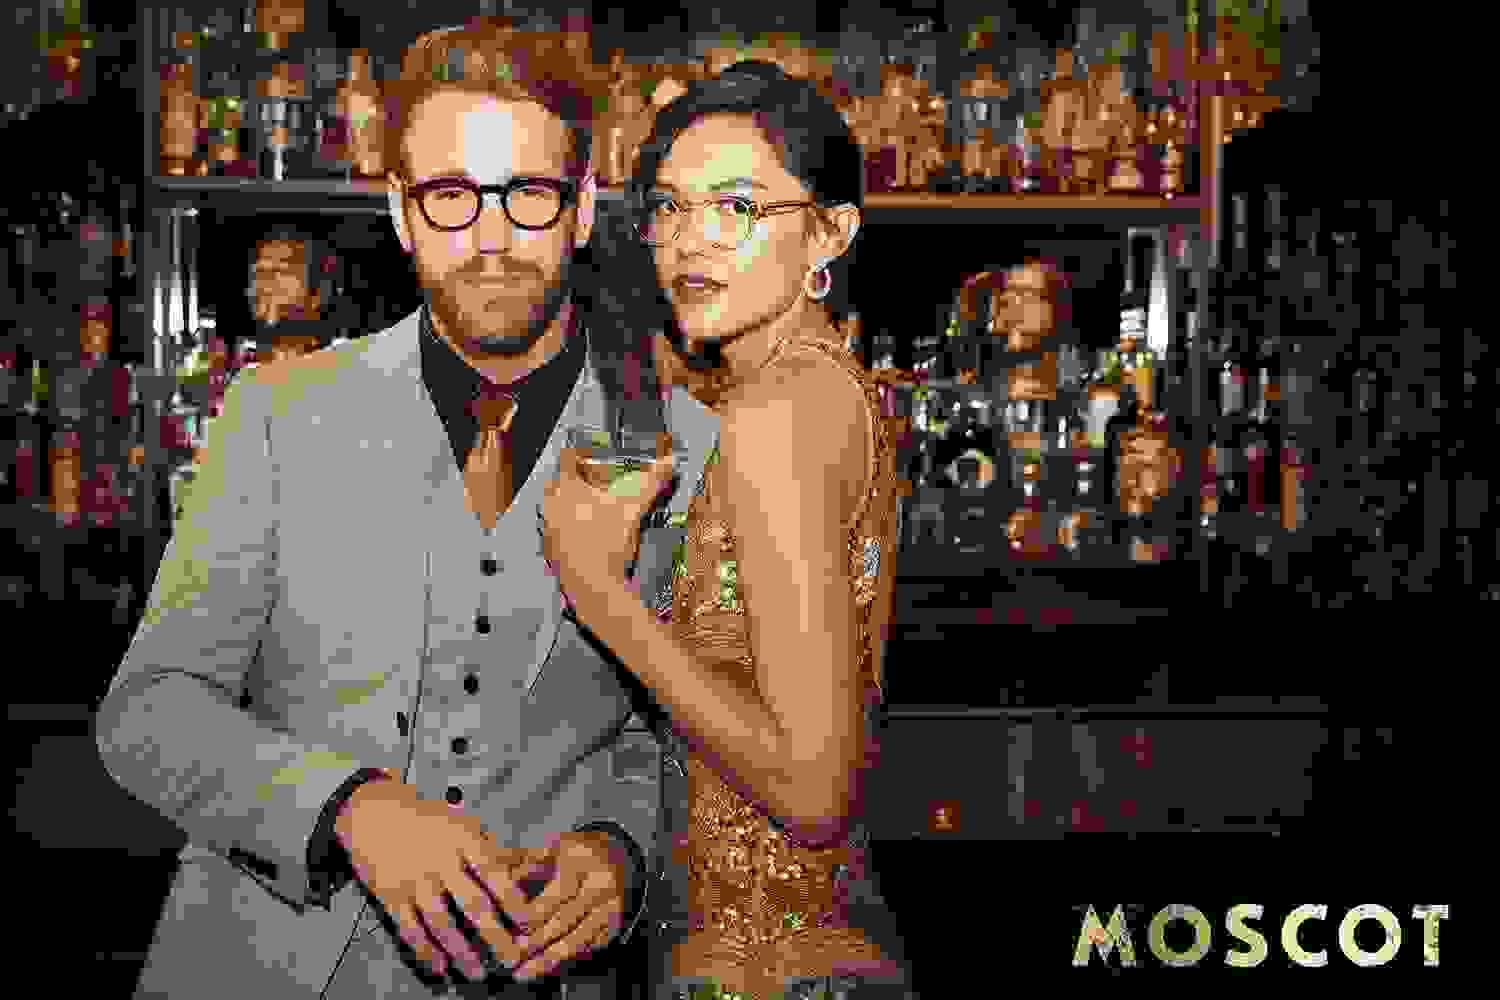 Aufnahme von einer Lounge Party mit einem weiblichen und einem männlichen Model, die an einer Bar stehen.